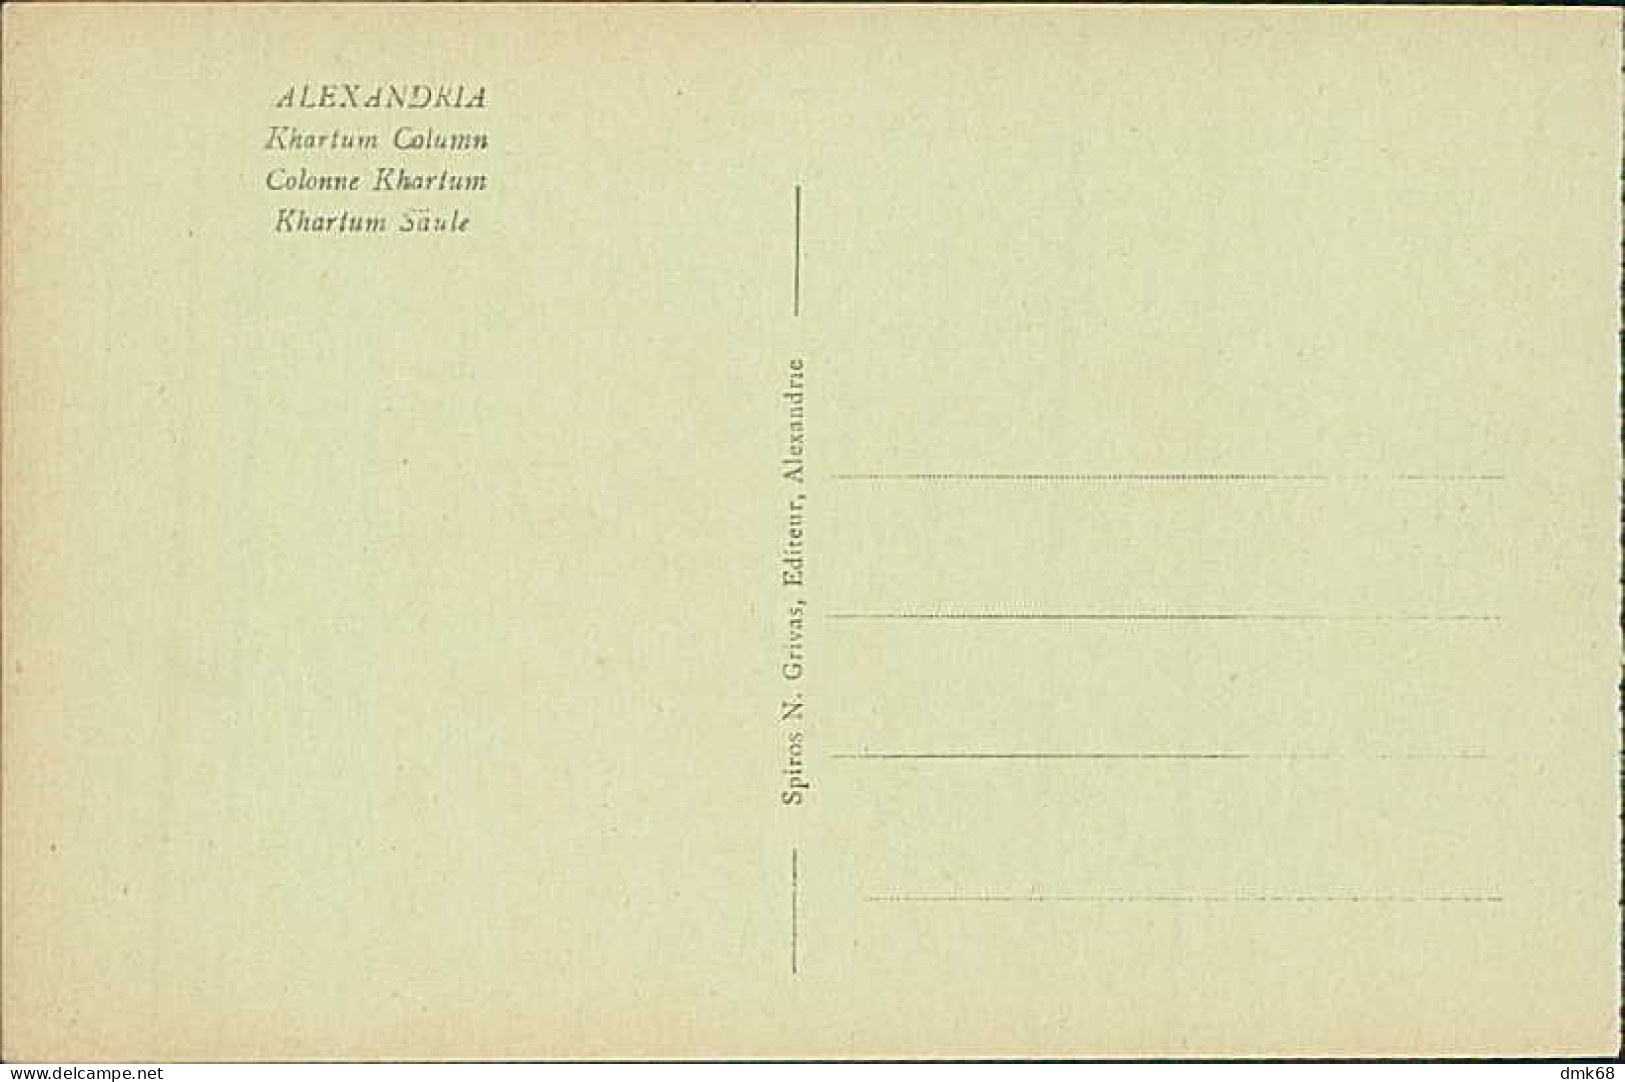 EGYPT - ALEXANDRIA / ALEXANDRIE - KHARTUM COLUMN - EDIT. N. GRIVAS - 1910s (12619) - Alexandrie